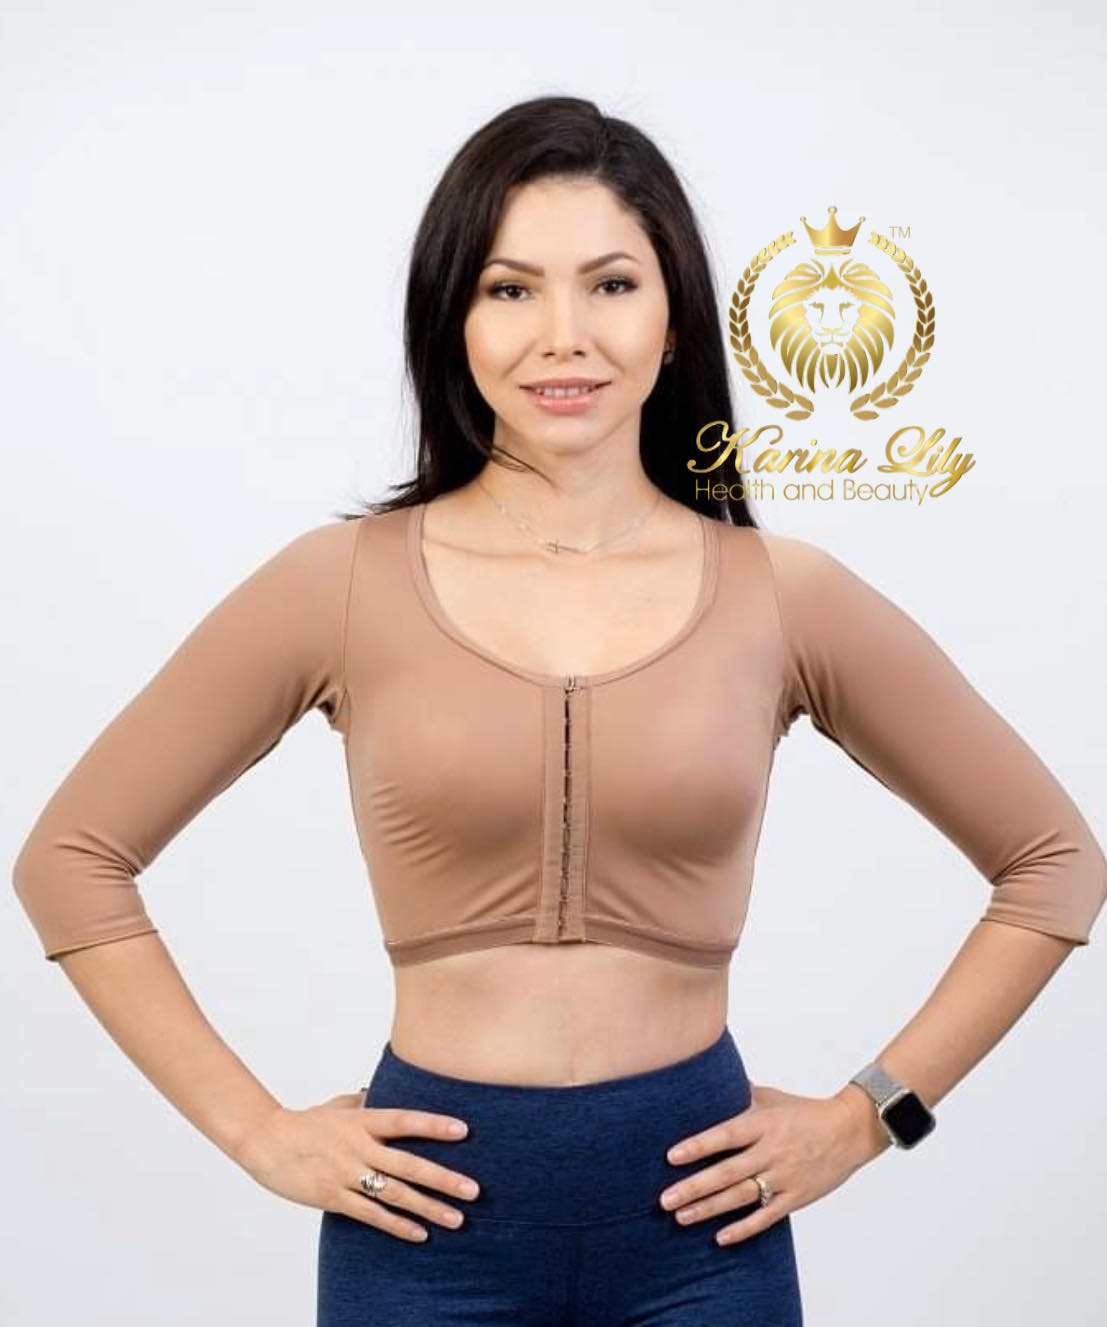 Arm Faja with bra (Faja de Brazos y bustos) – Karina Lily Health and Beauty